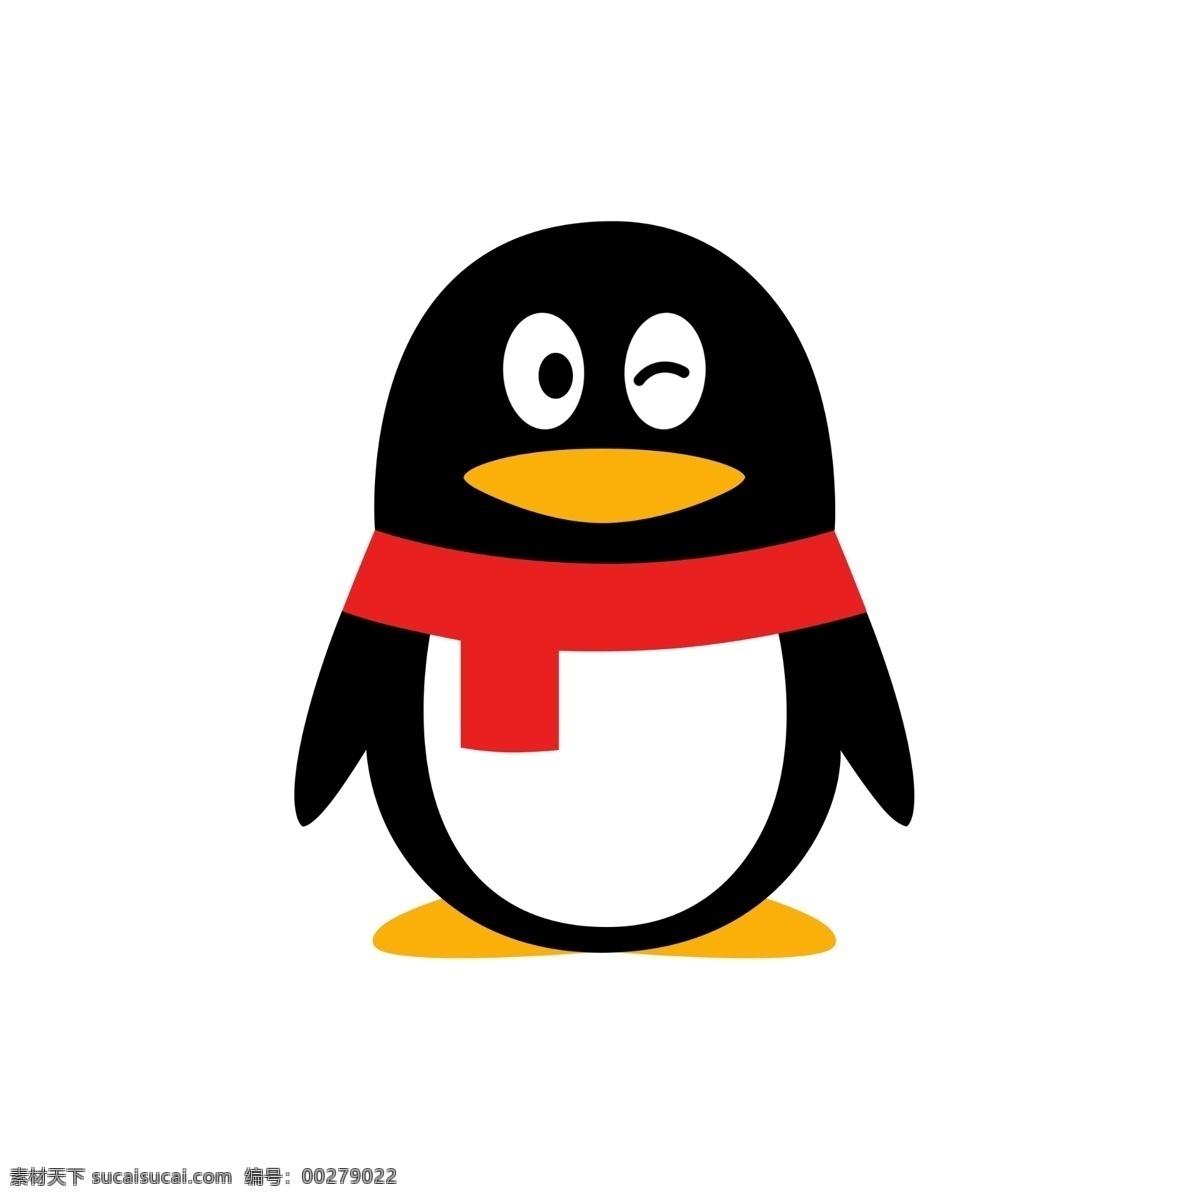 qq企鹅图标 企鹅 qq 图标 新版 卡通 标志图标 其他图标